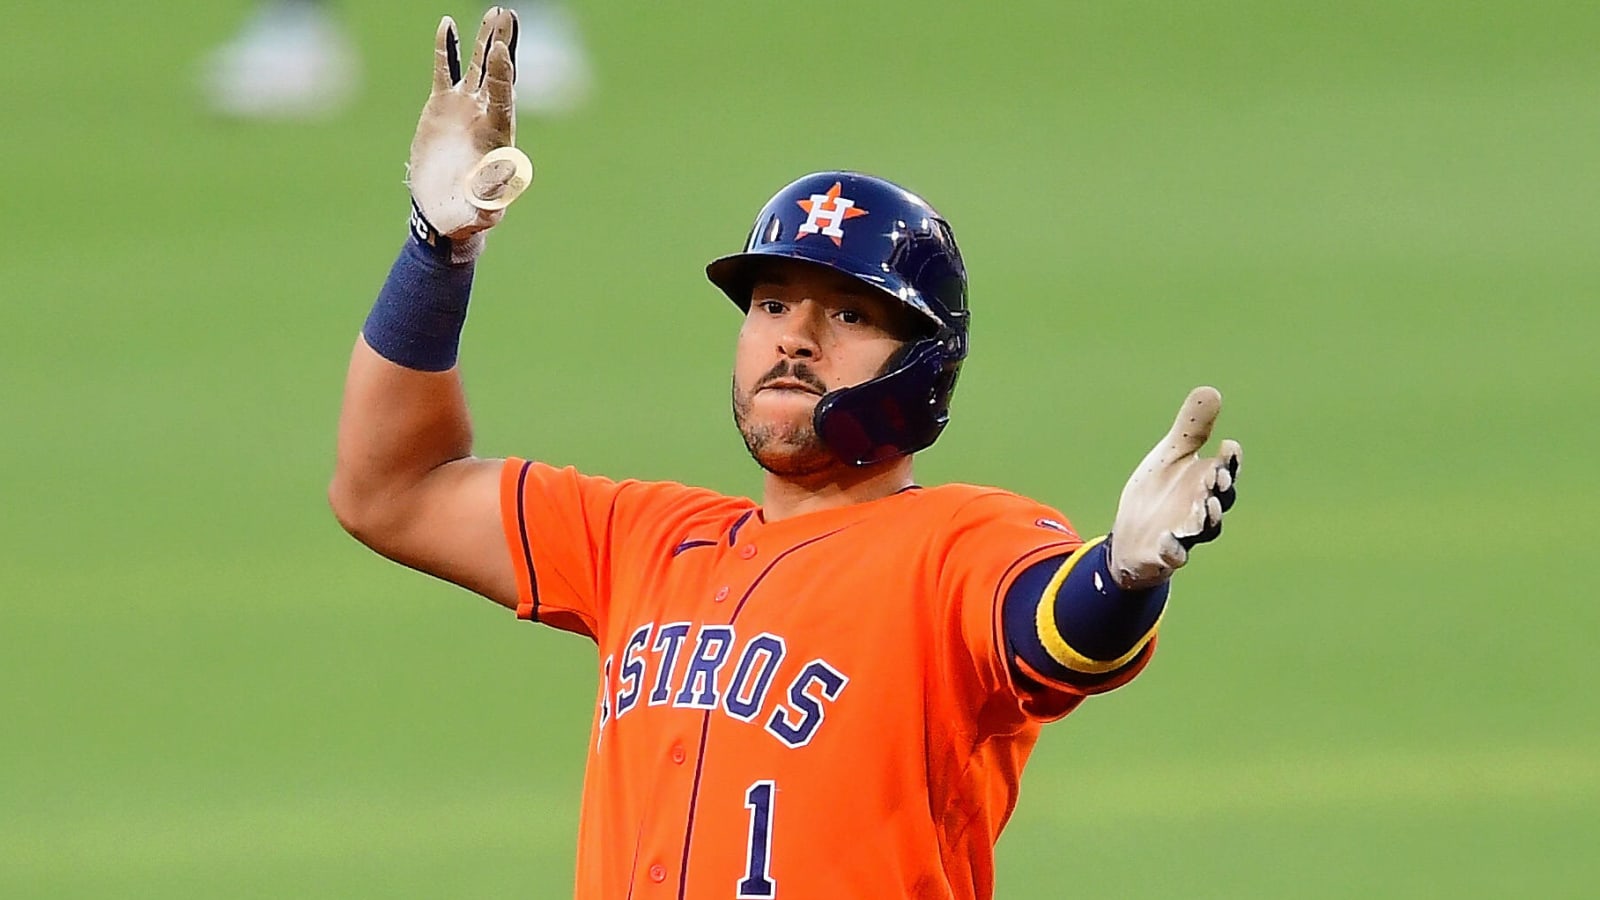 Report: Carlos Correa, Astros avoid arbitration